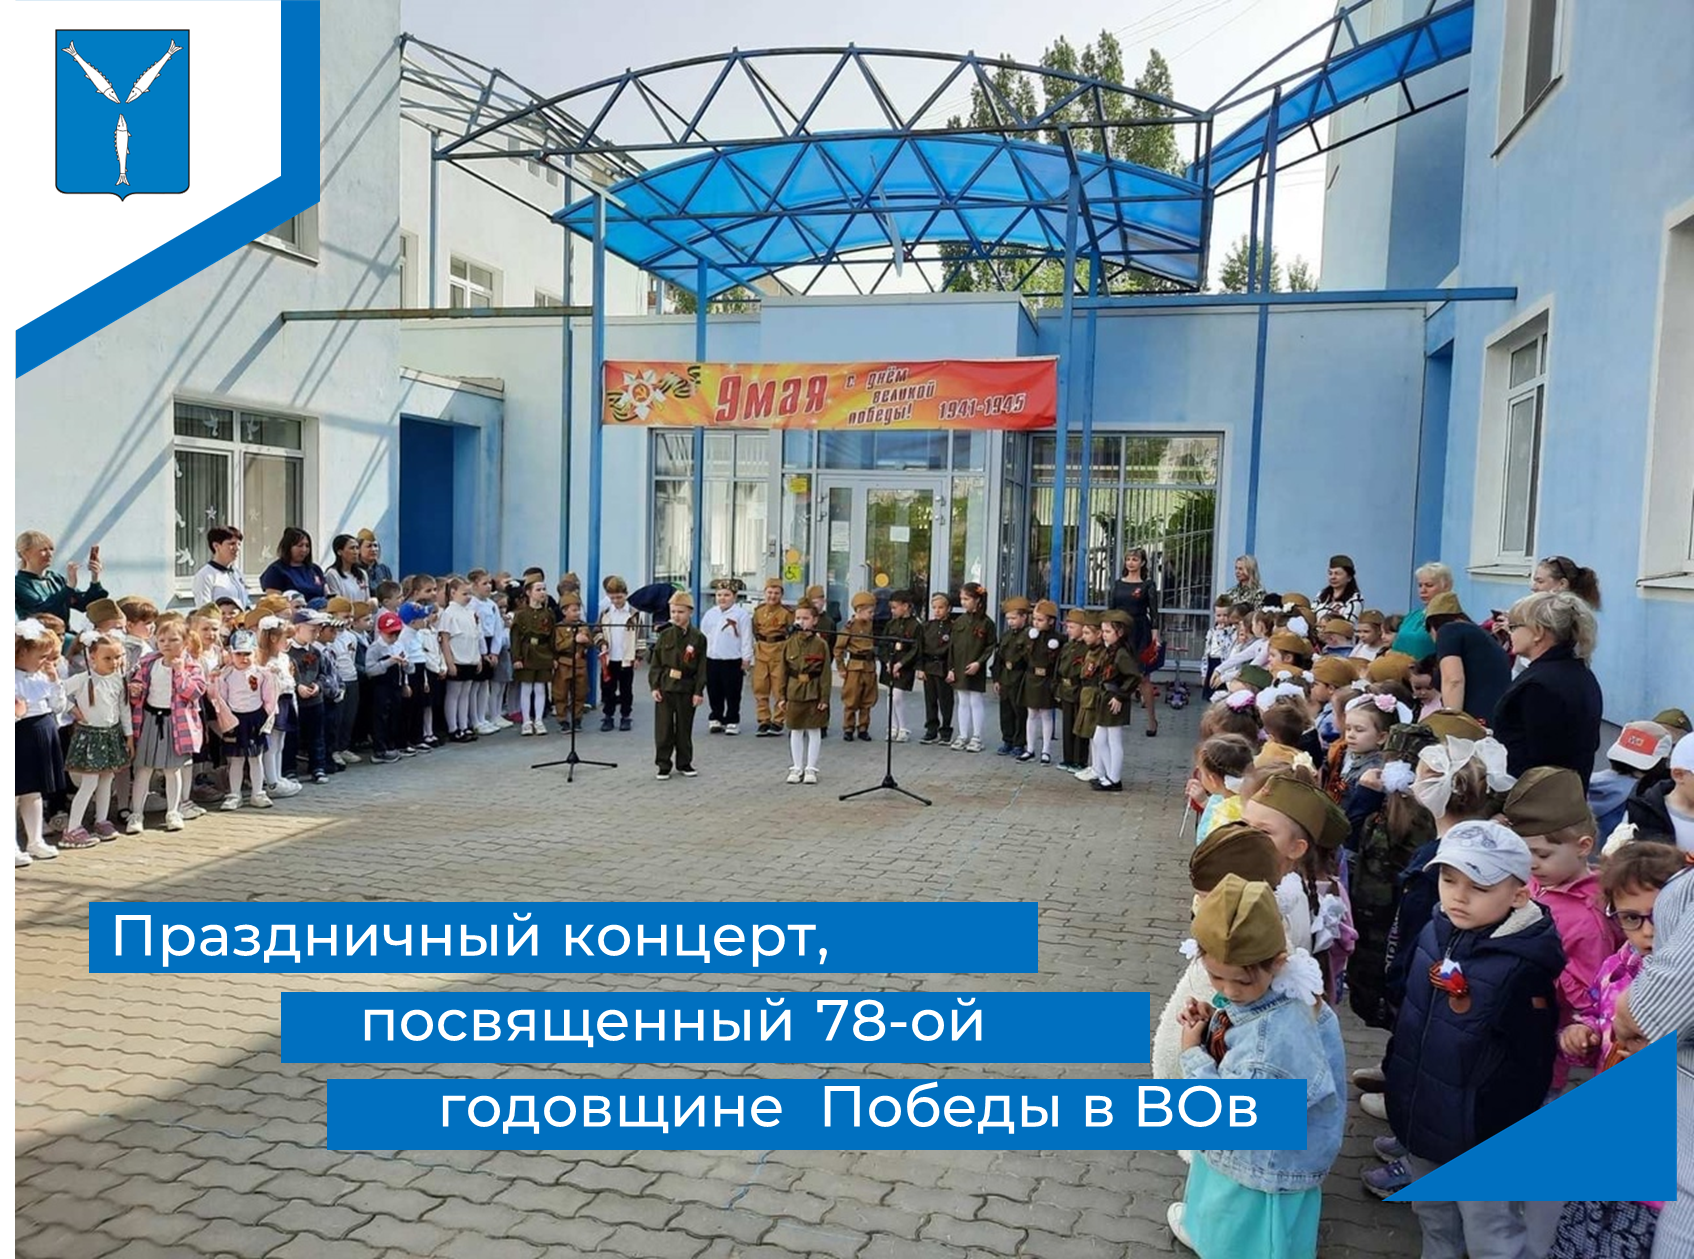 Праздничный концерт в рамках празднования Дня Победы.